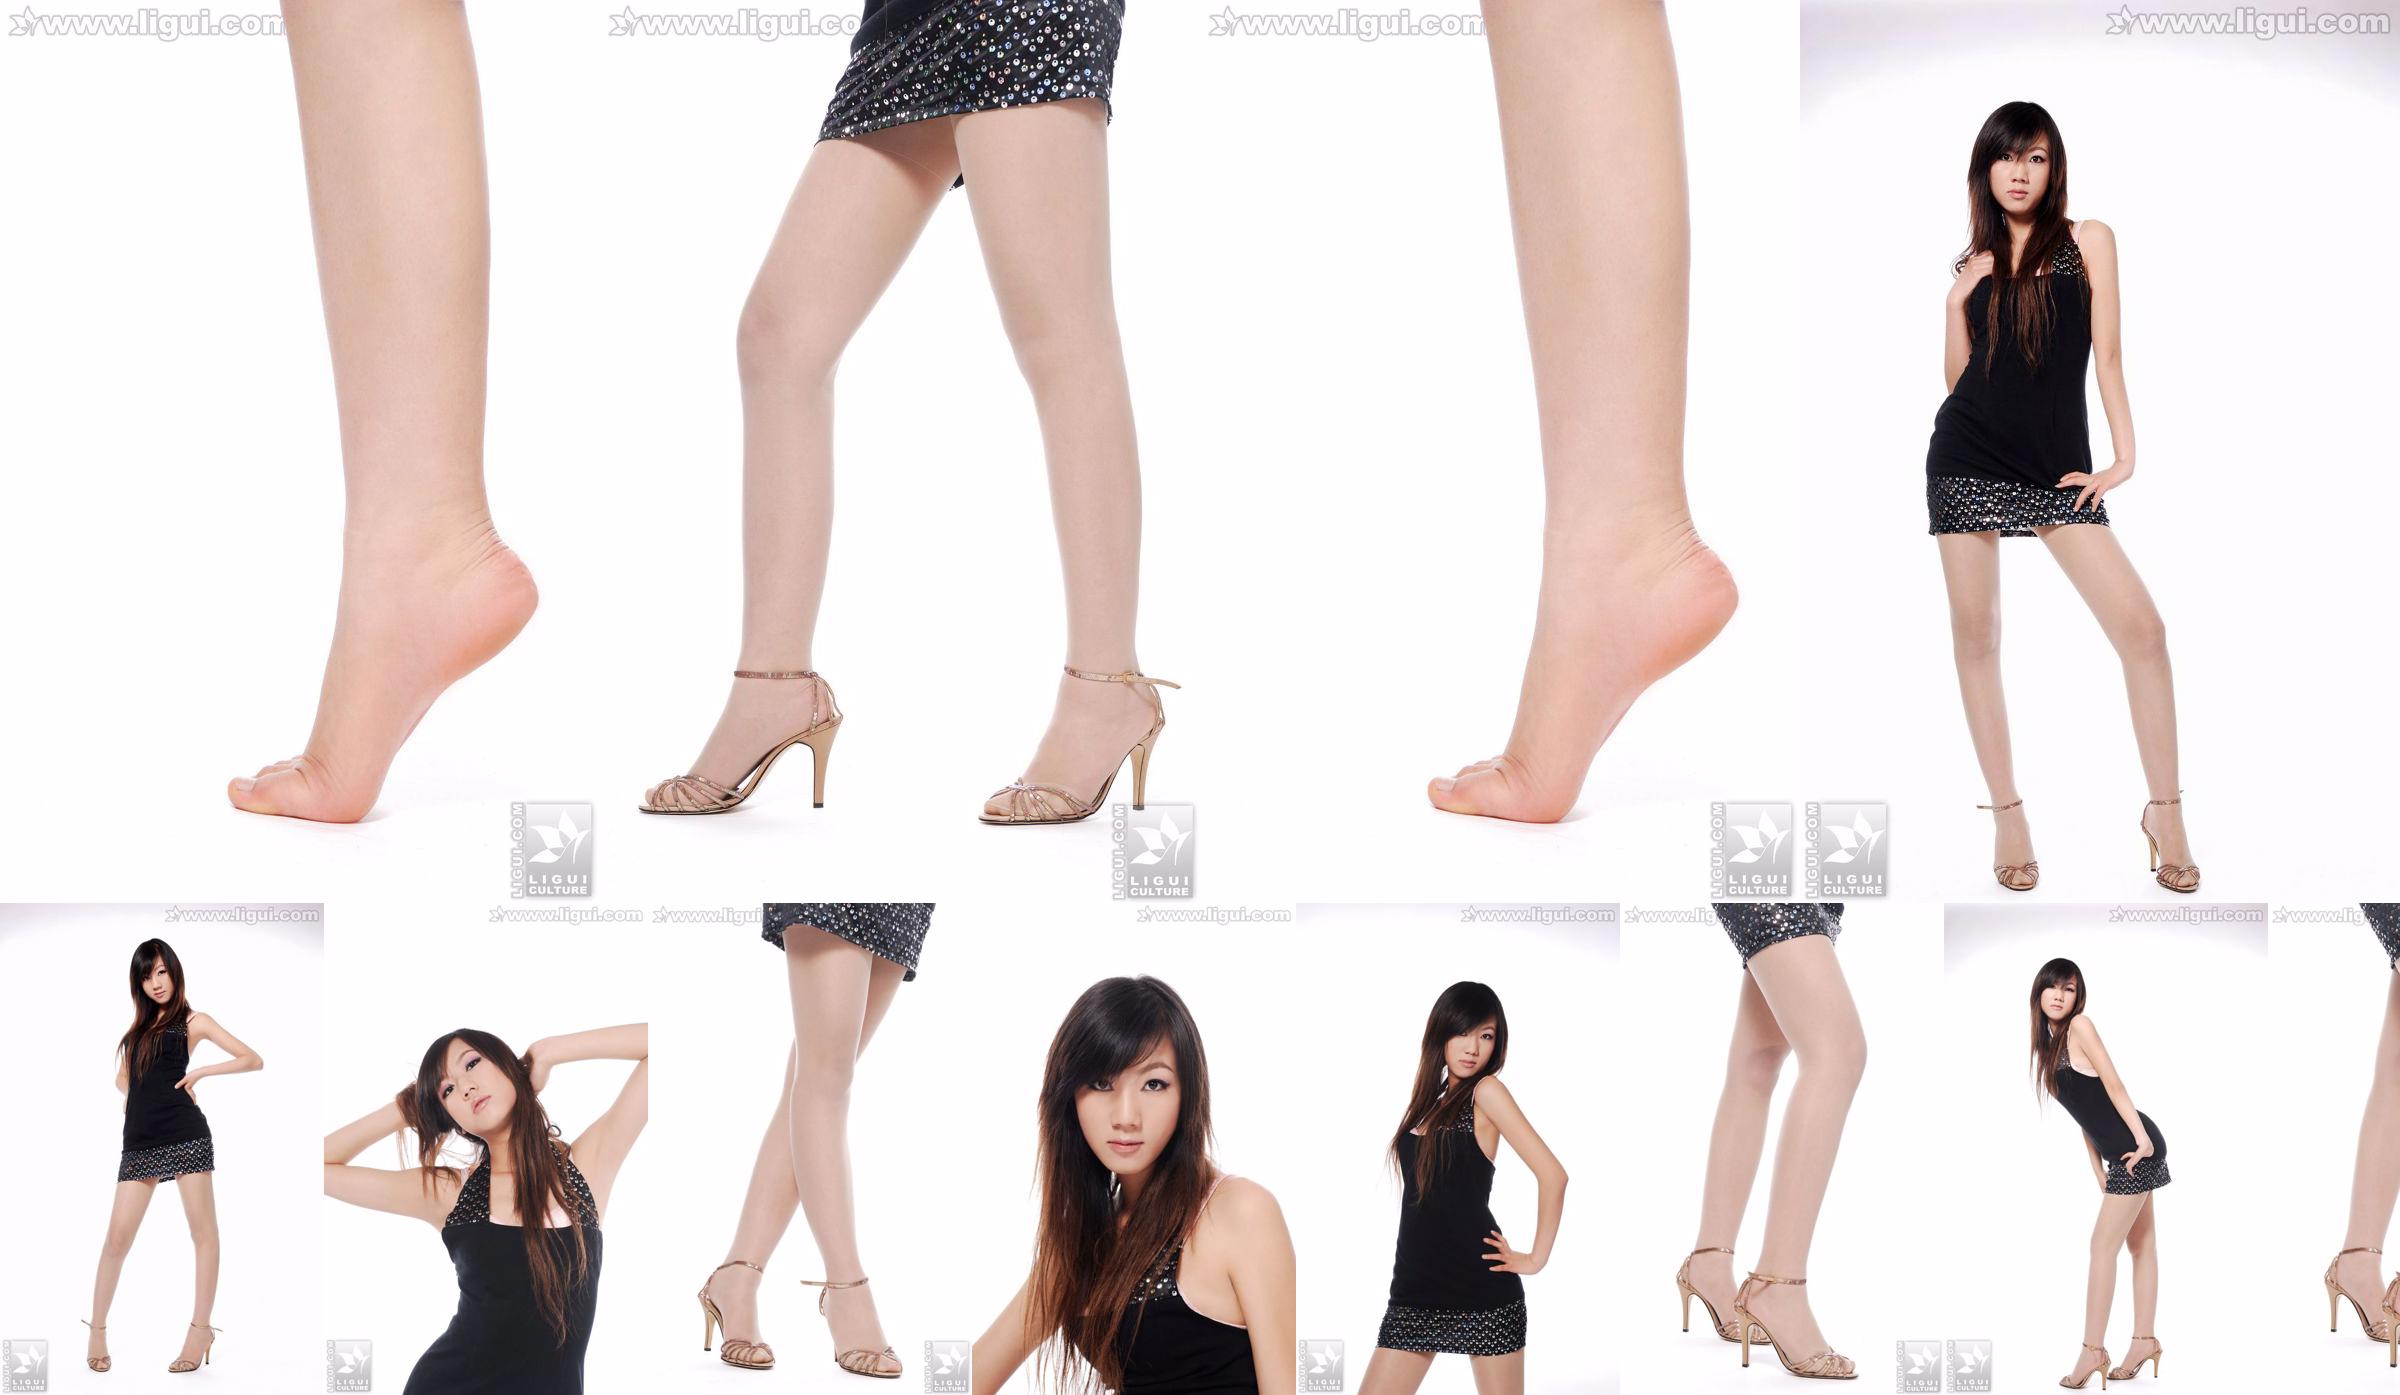 Người mẫu Sheng Chao "Giày cao gót ngọc xinh show mới" [Sheng LiGui] Ảnh chụp chân dài ngọc nữ xinh đẹp No.cd0c15 Trang 3